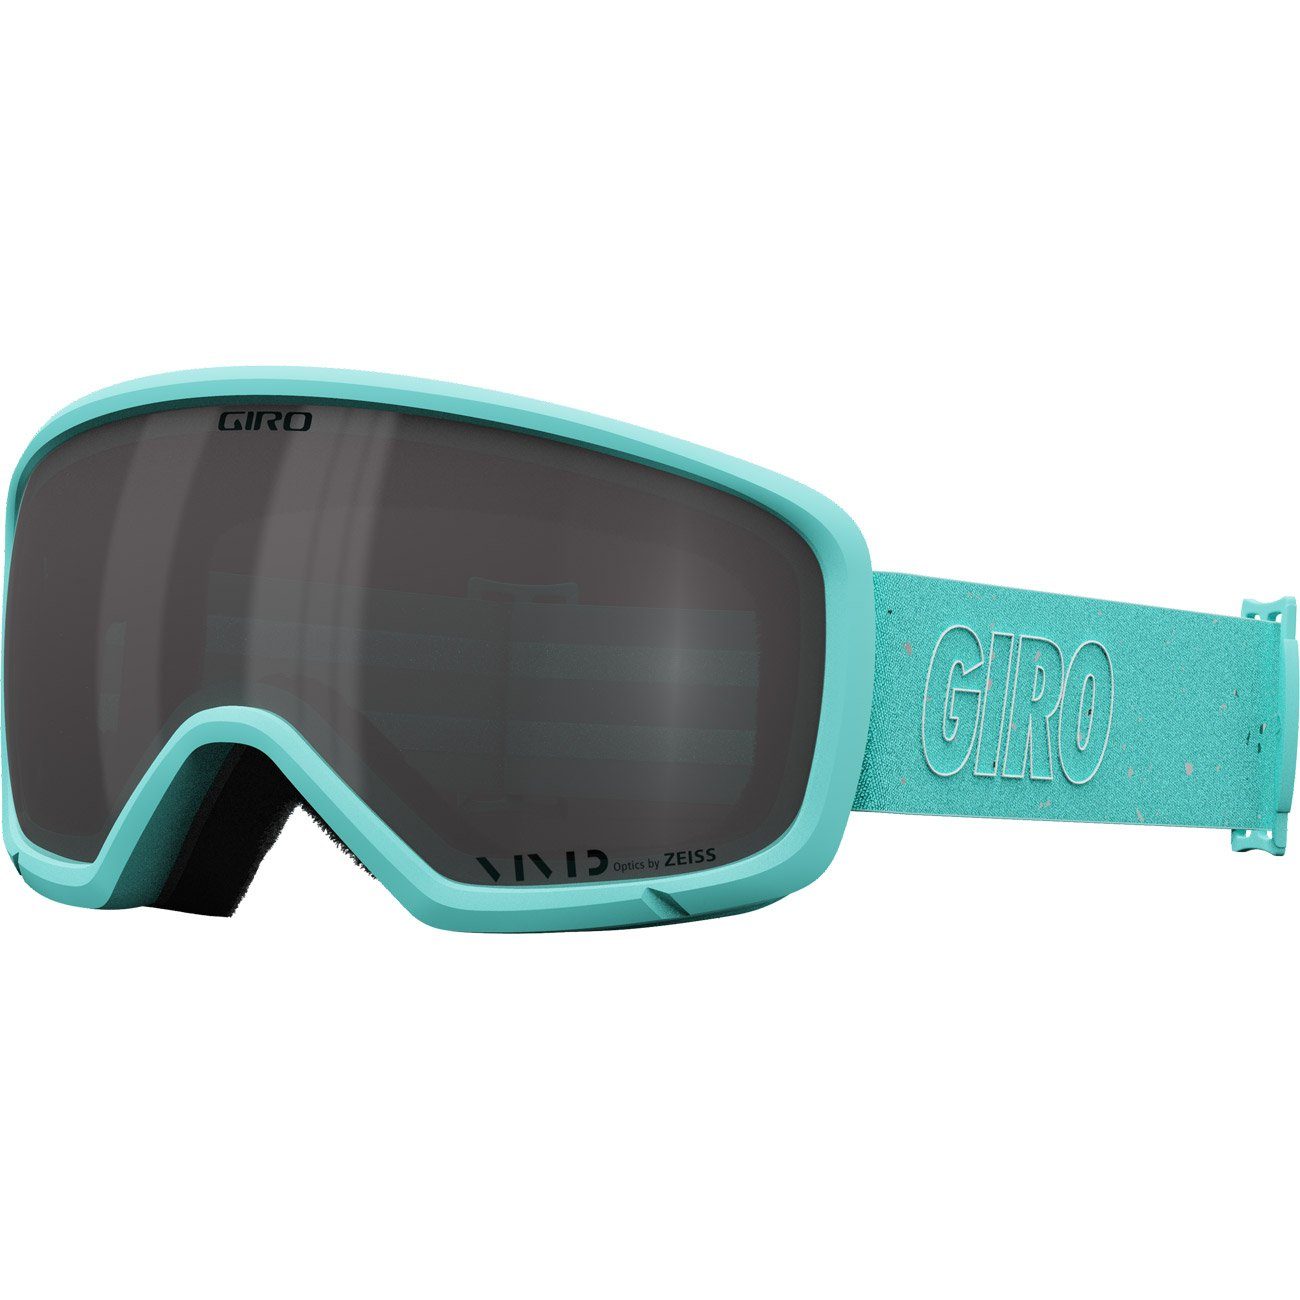 Giro Snowboardbrille, Millie blue mica vivid smoke